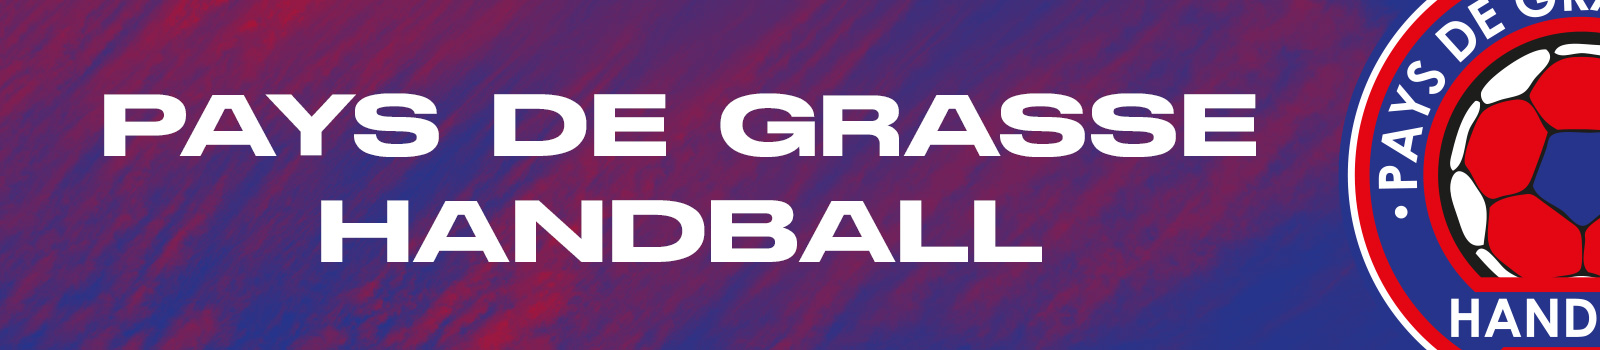 Pays de Grasse Handball